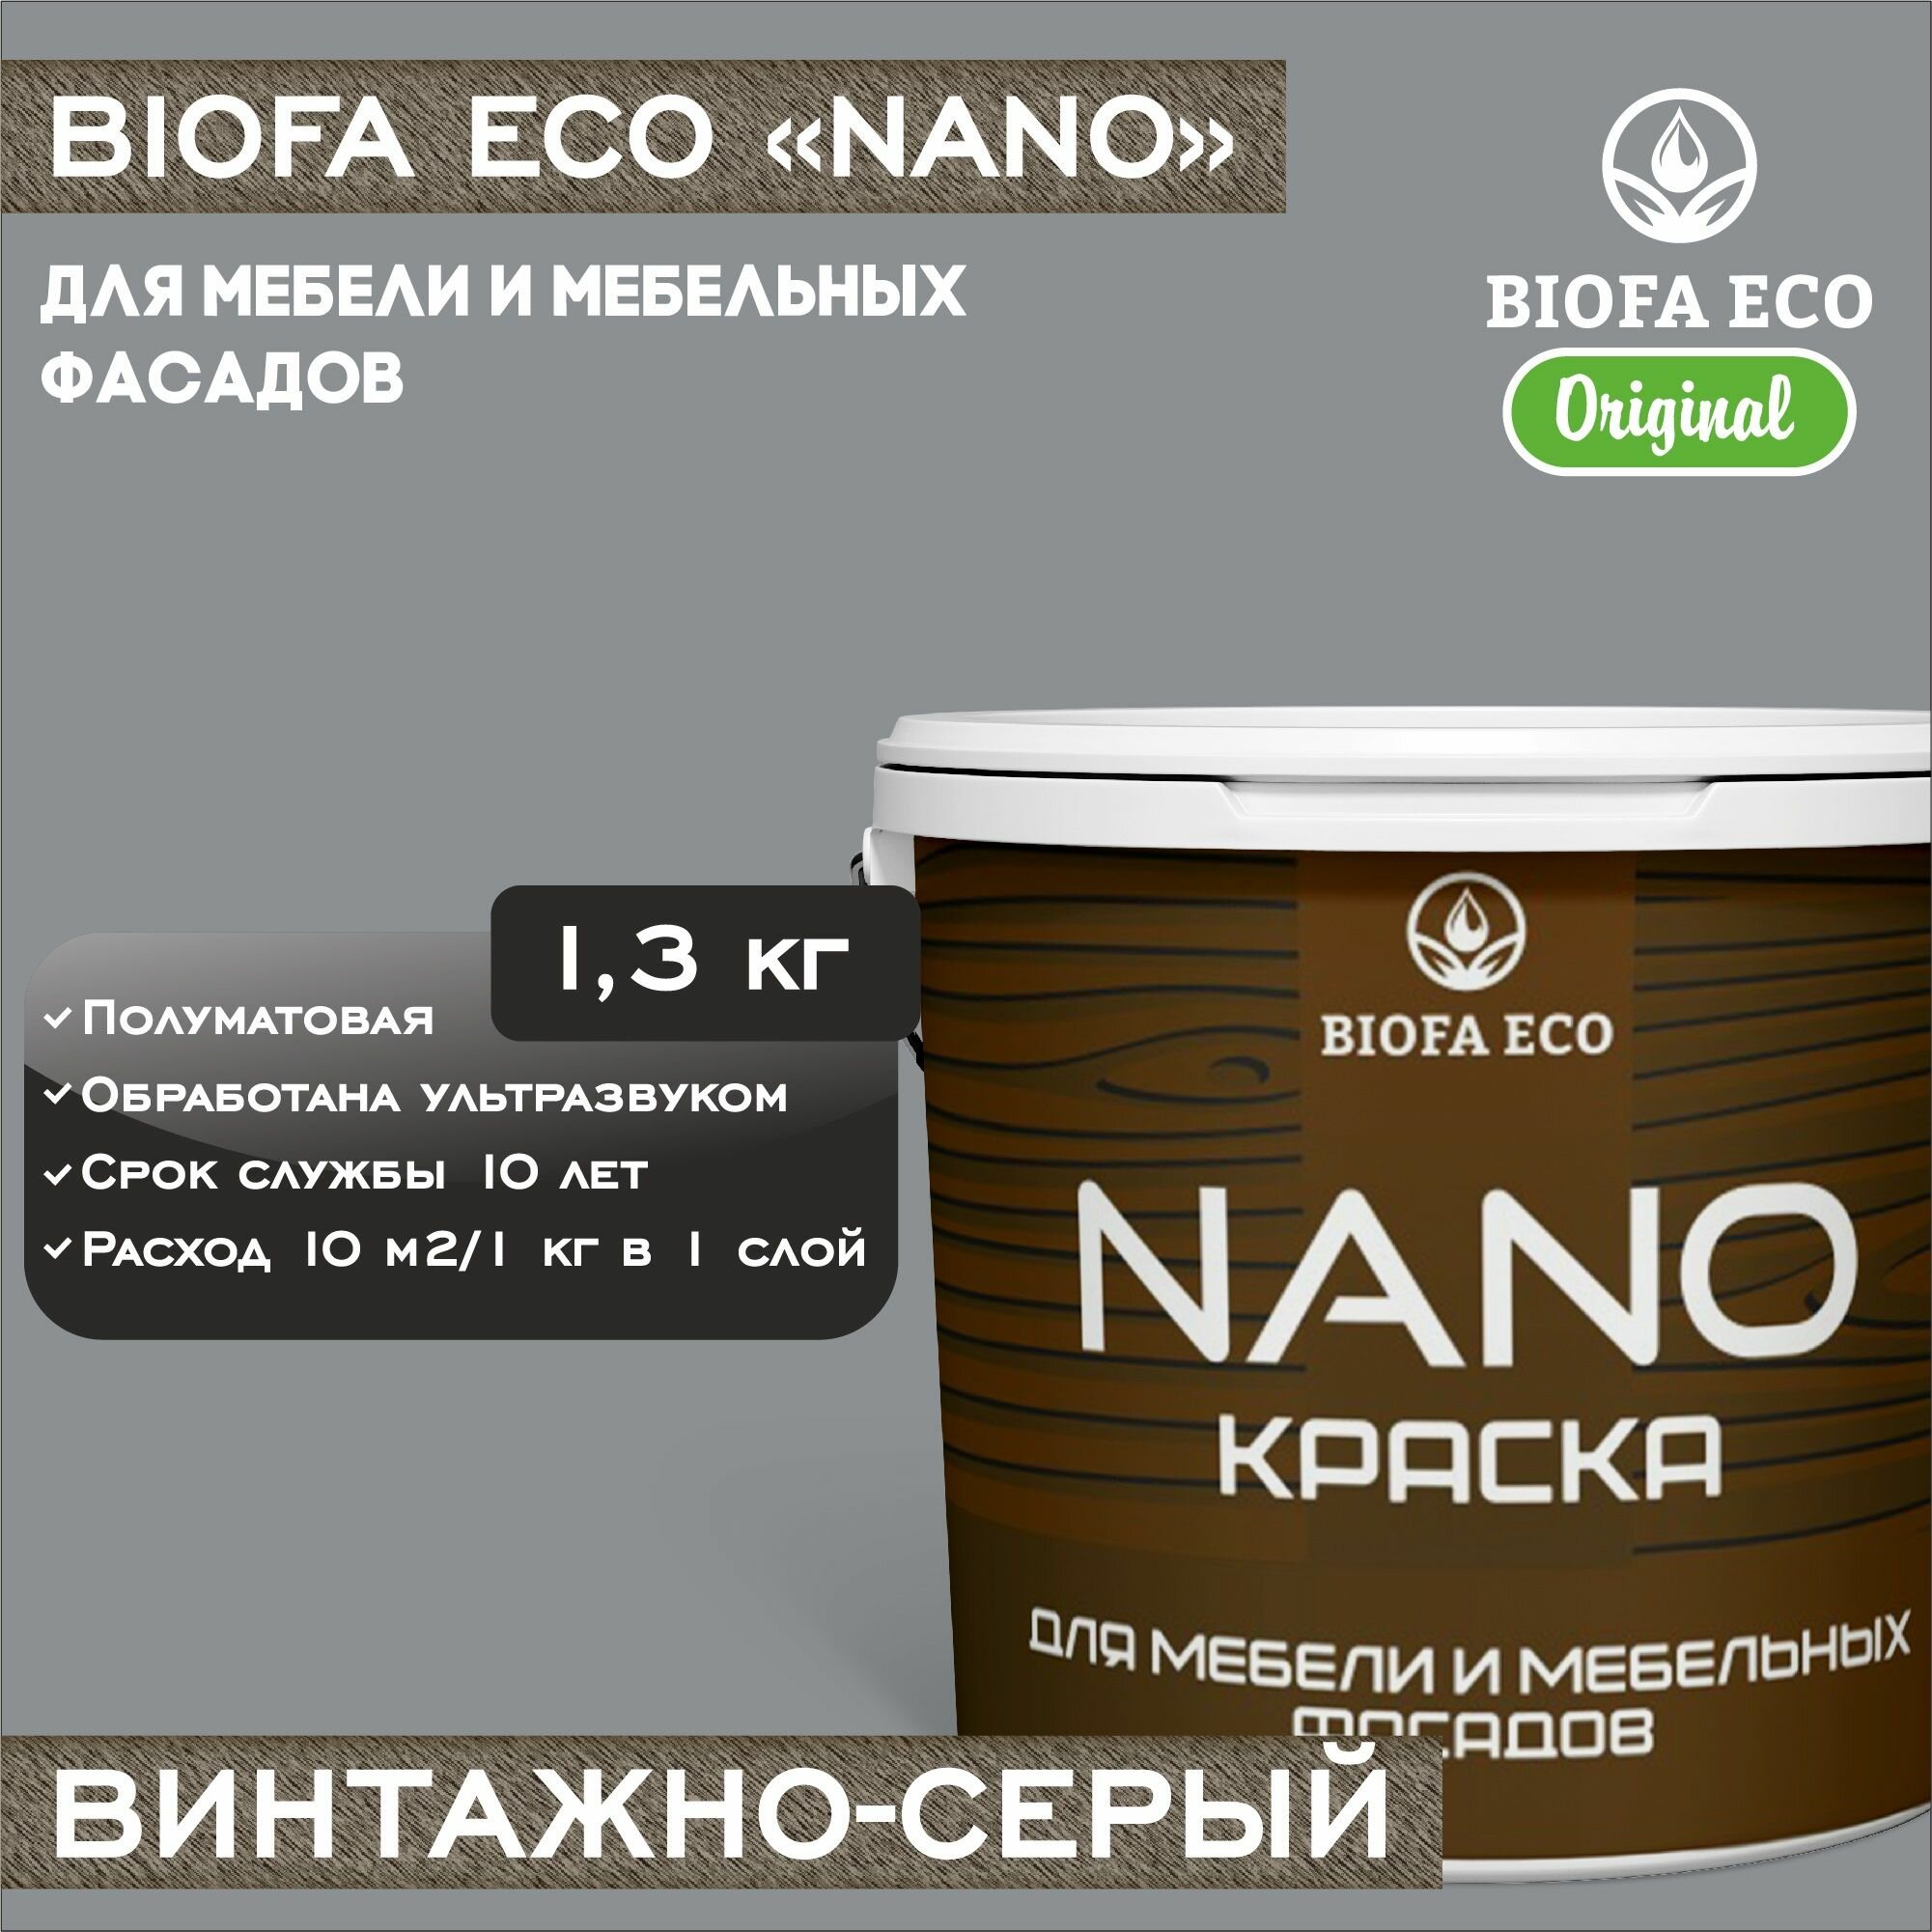 Краска BIOFA ECO NANO для мебели и мебельных фасадов, укрывистая, полуматовая, цвет винтажно-серый, 1,3 кг